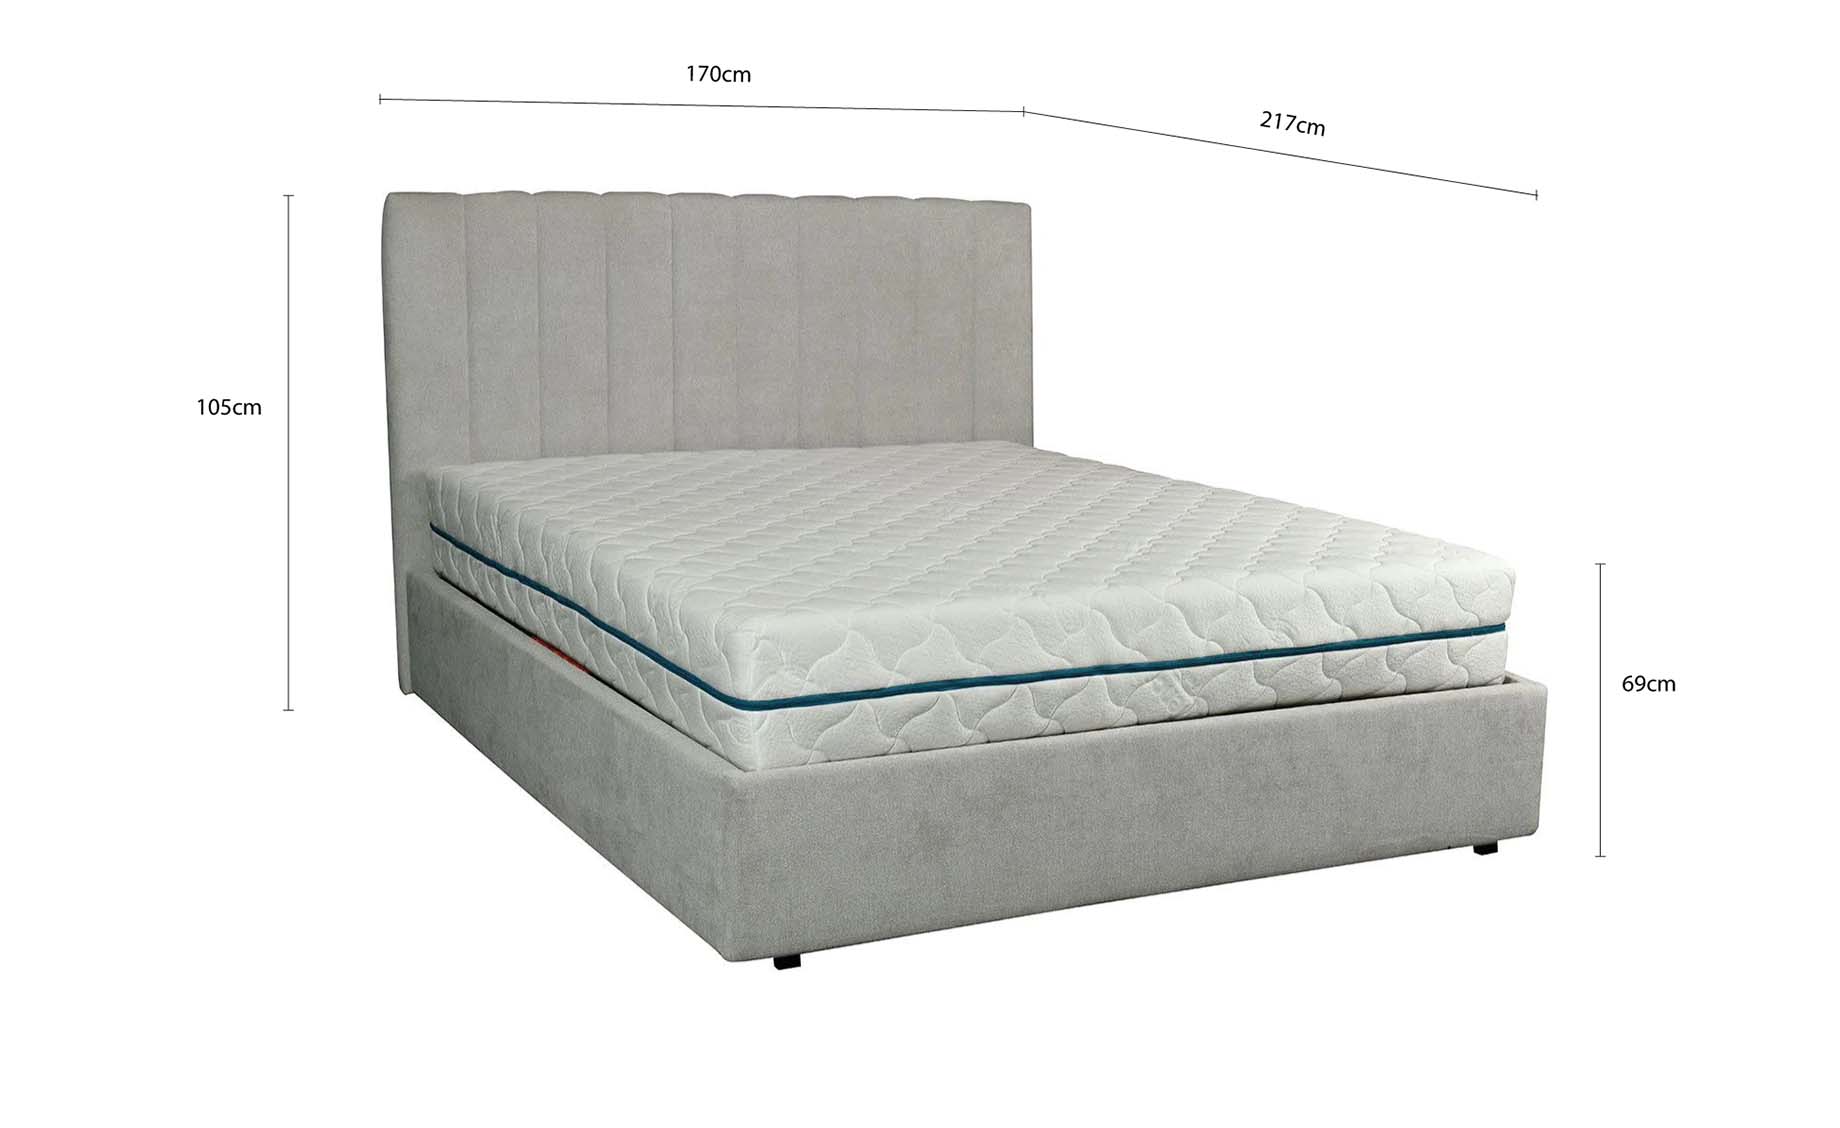 Napa krevet bez podnice 170x217x105cm bež